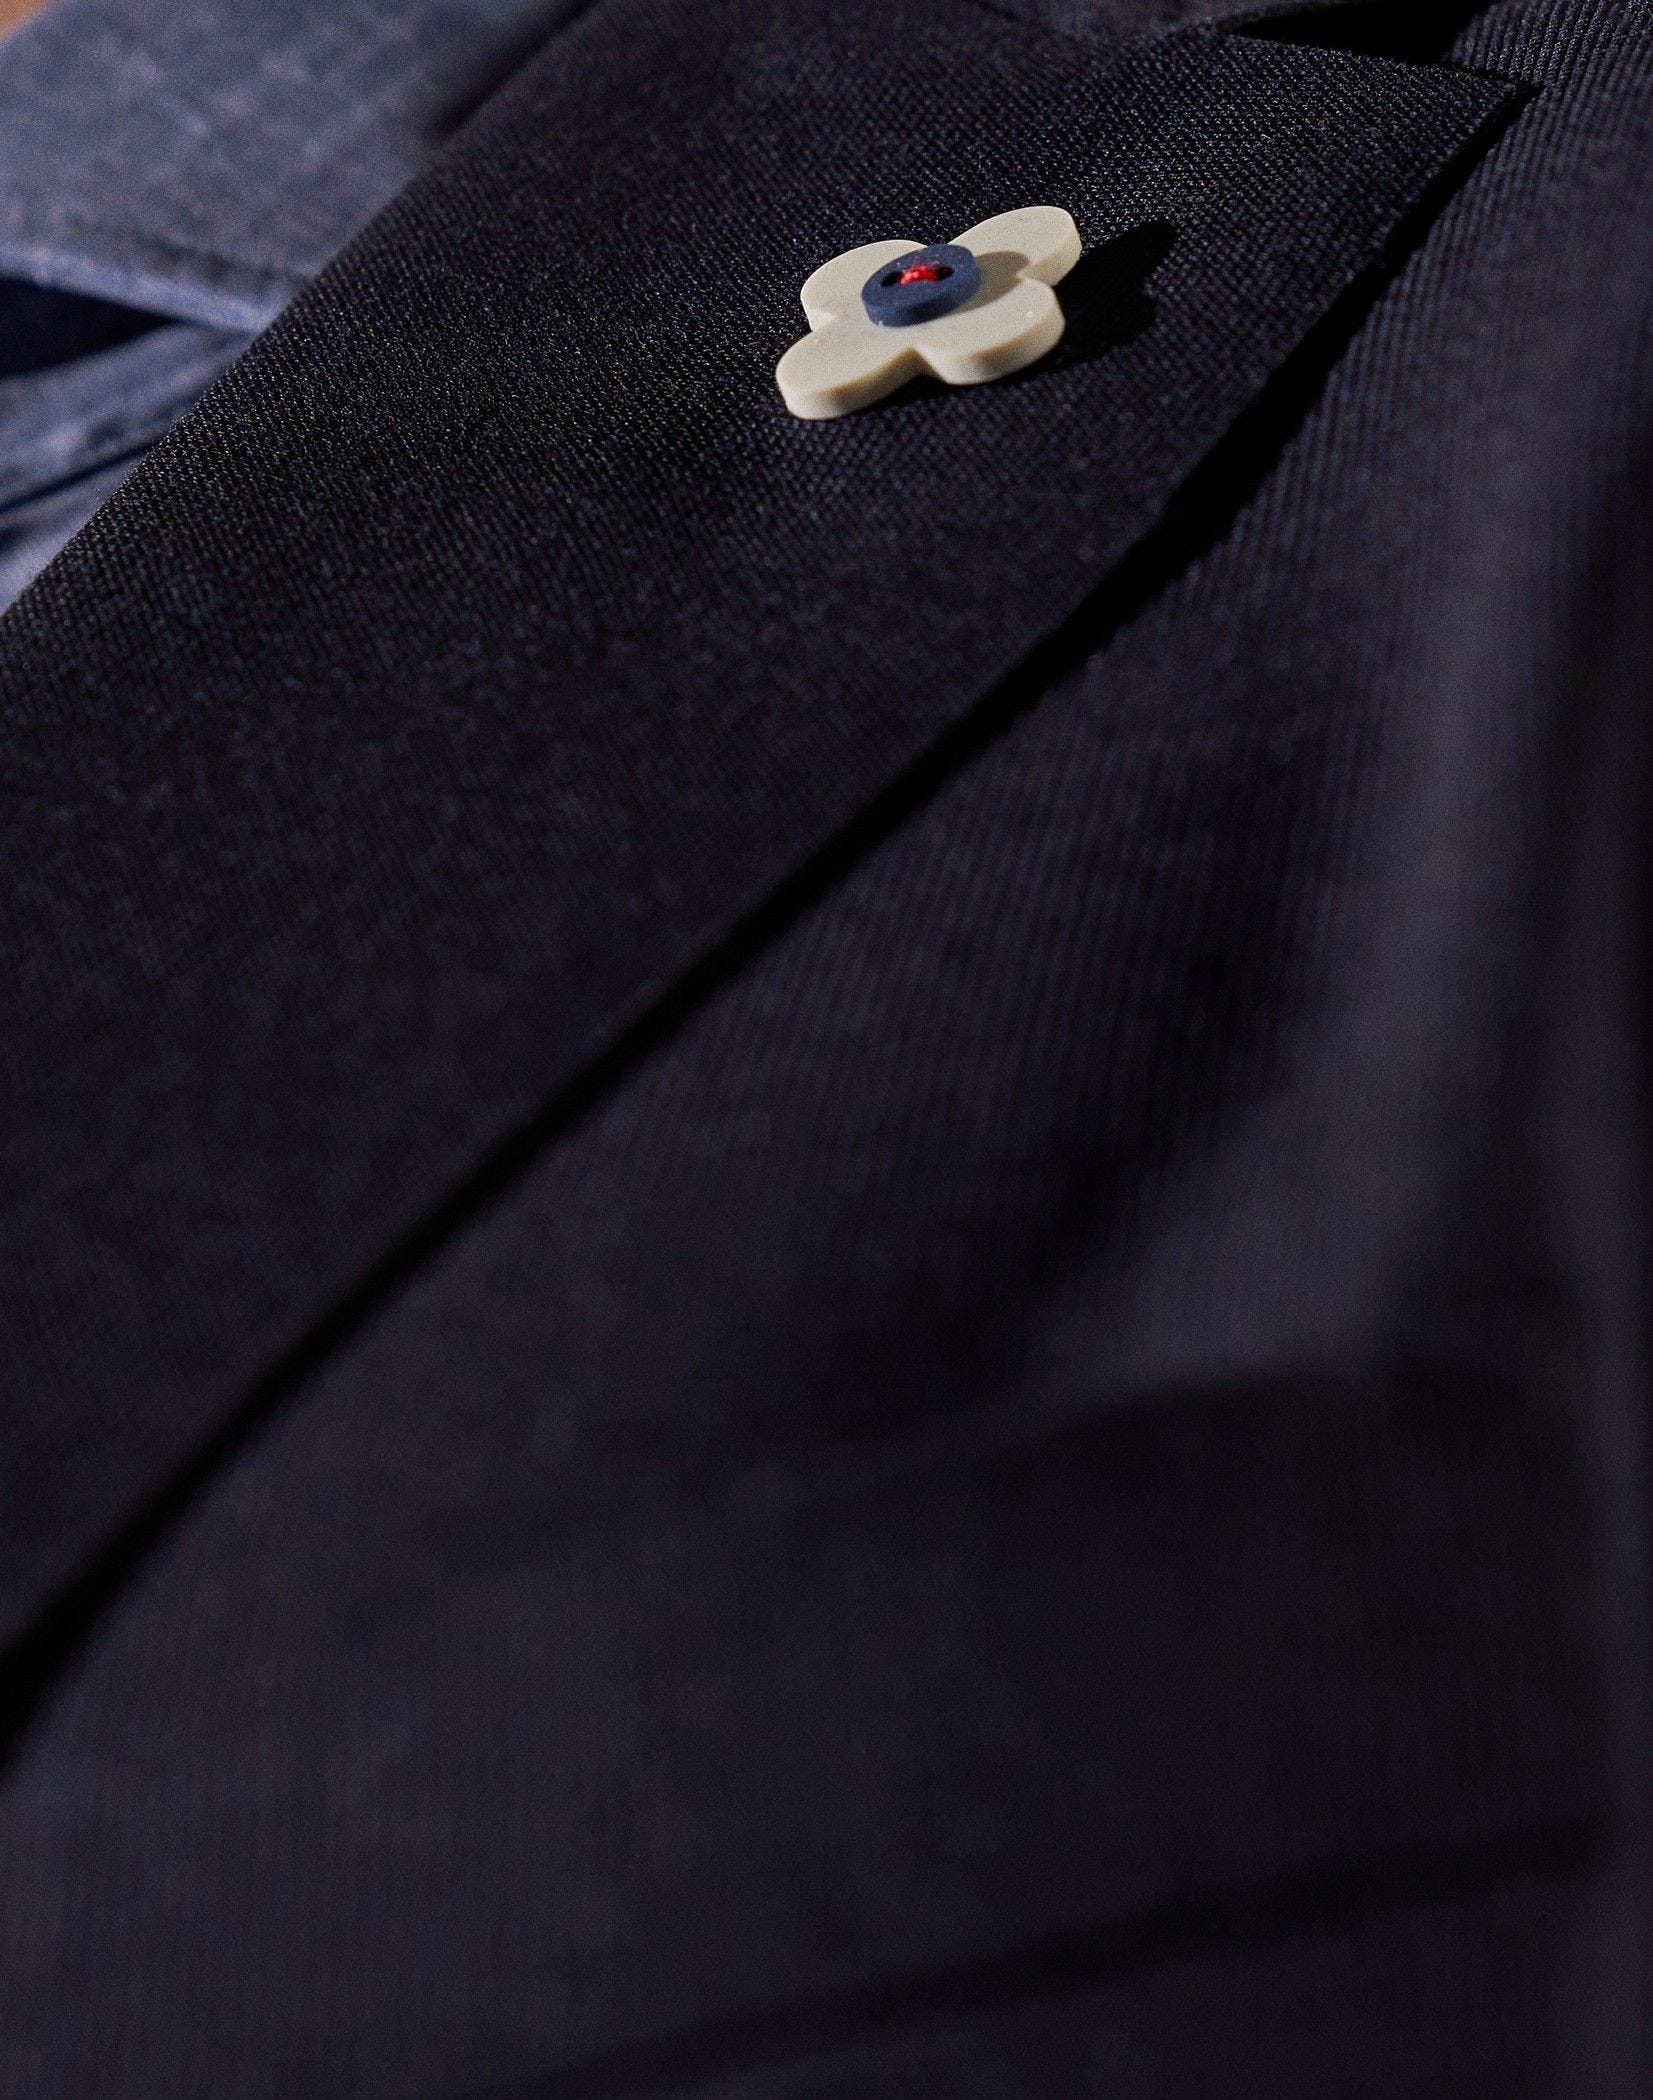 Wool blend suit - Easy Wear